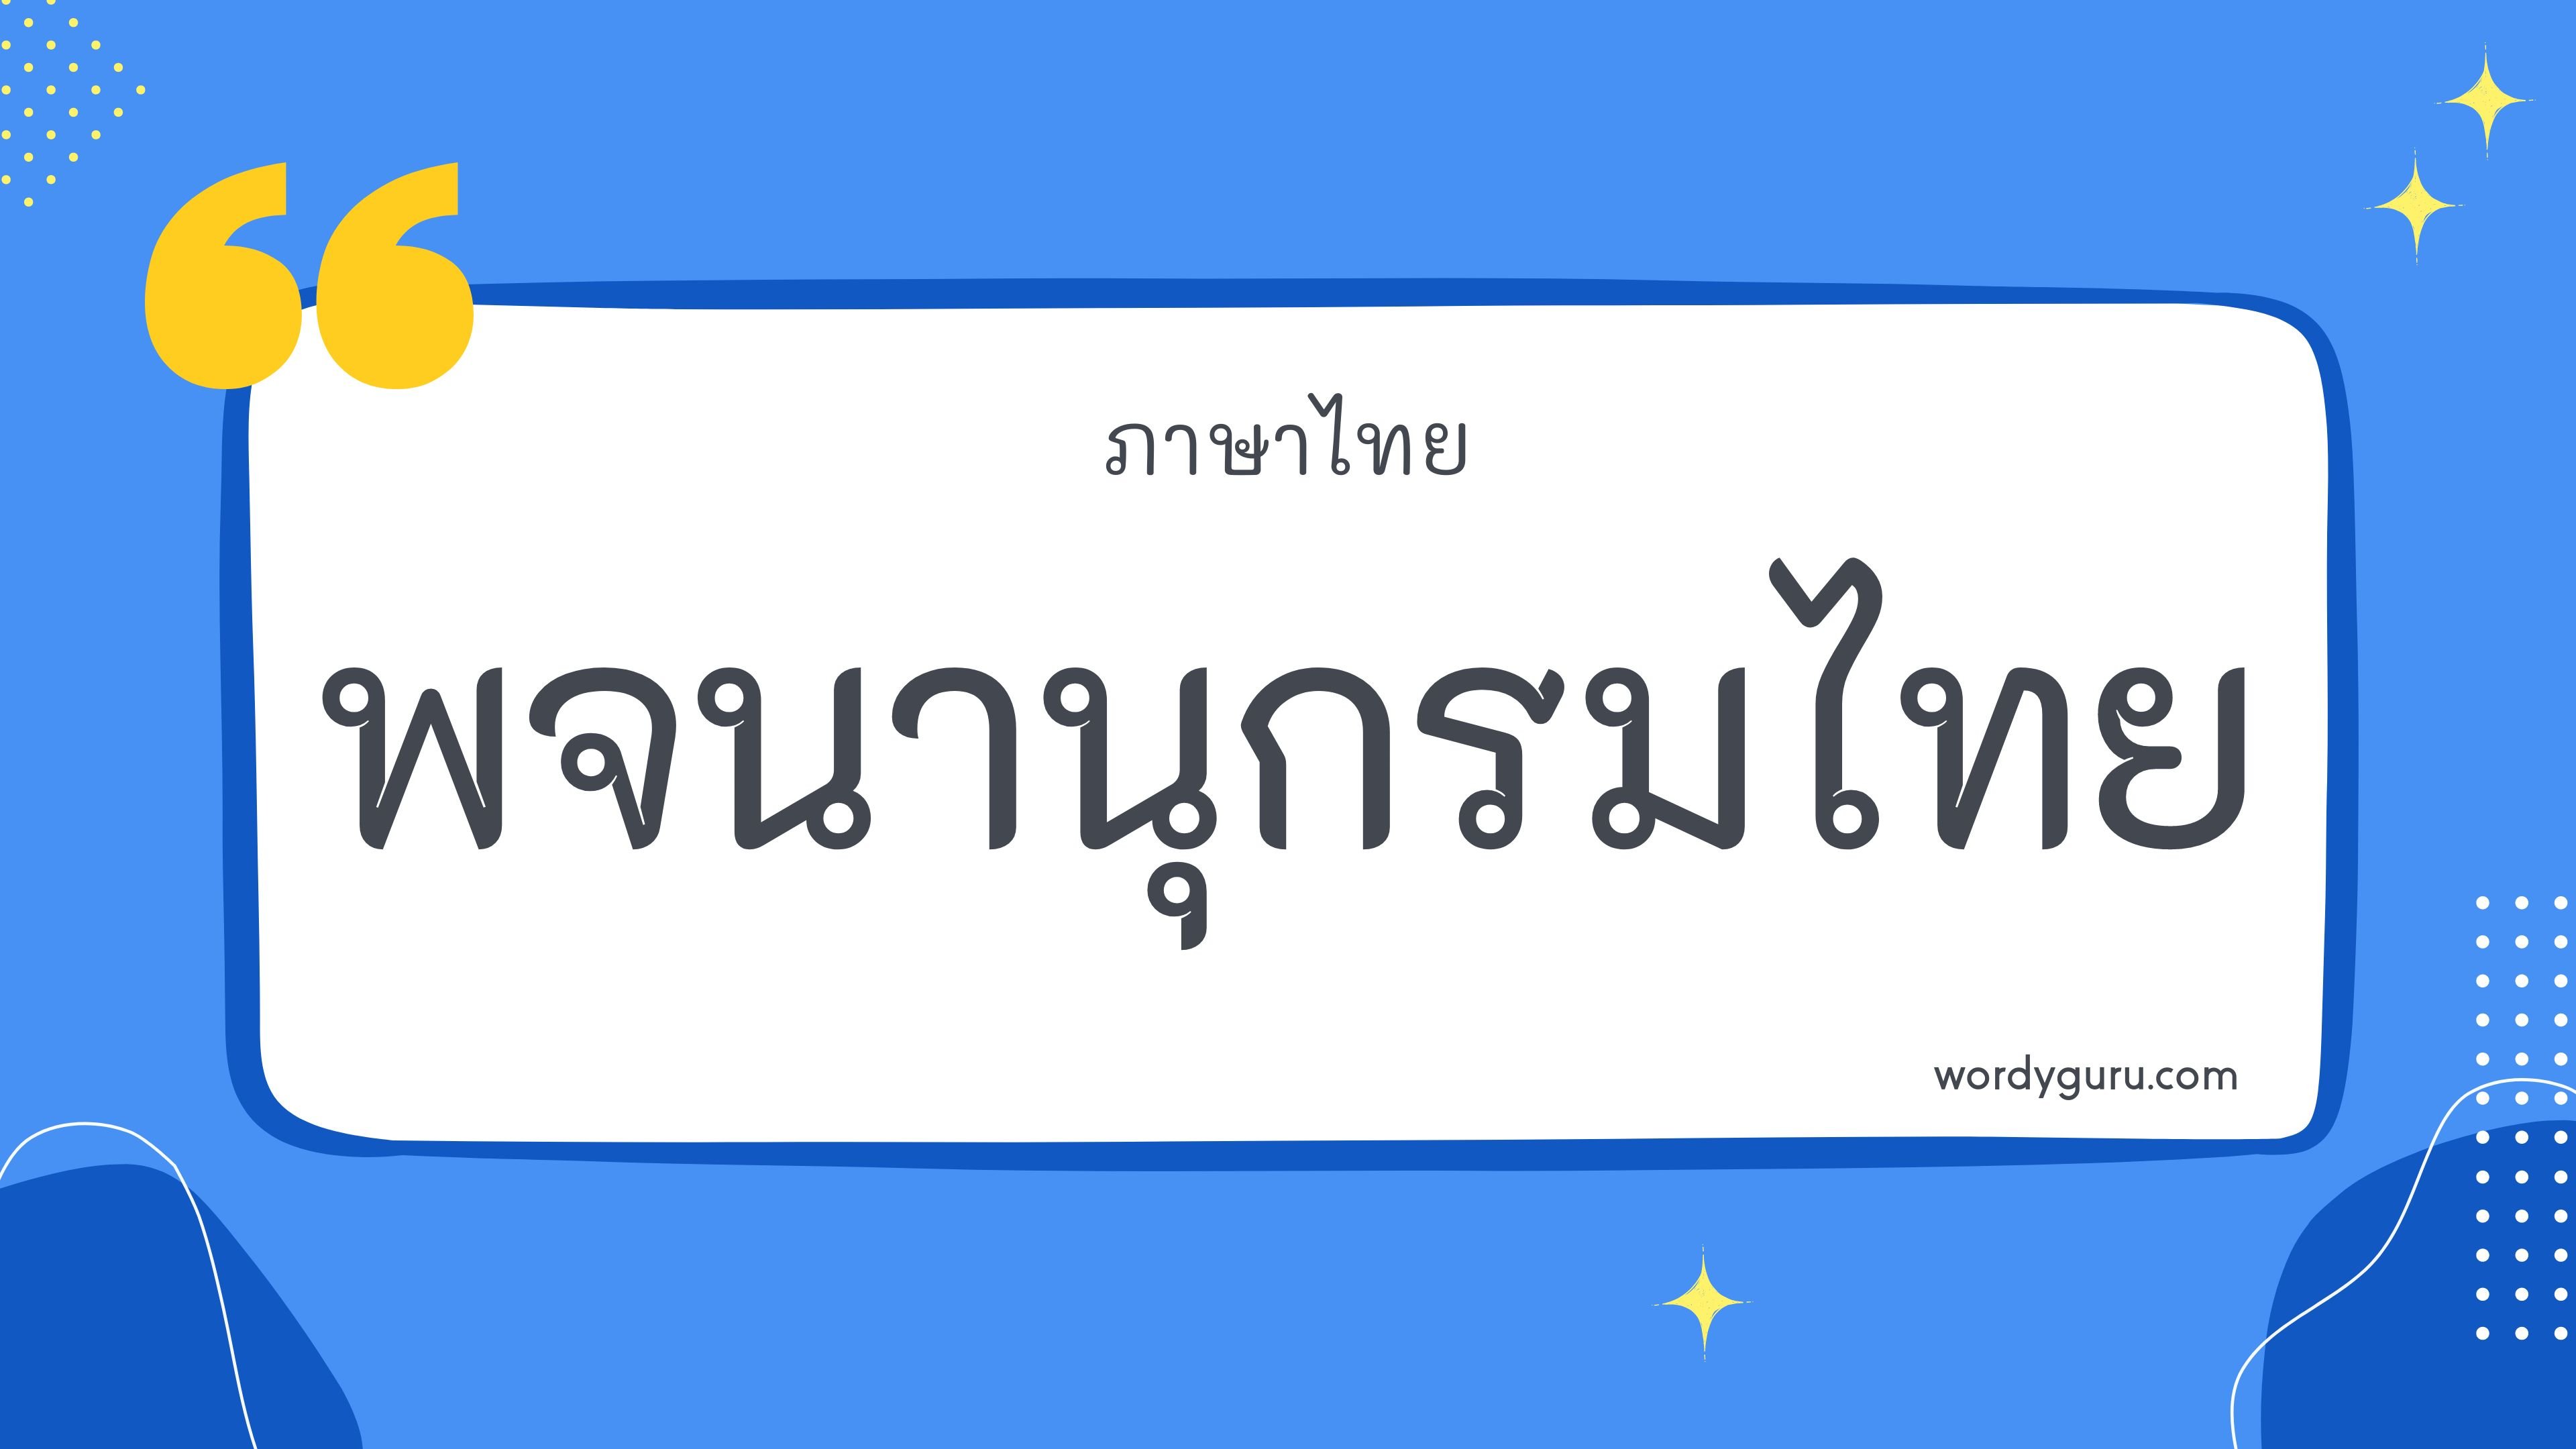 คำในภาษาไทย ประเภท สำนวน ตามที่เคยรู้จัก คำในภาษาไทย มีอยู่หลายคำ จะมีคำไหนที่เรารู้จักไหมนะ